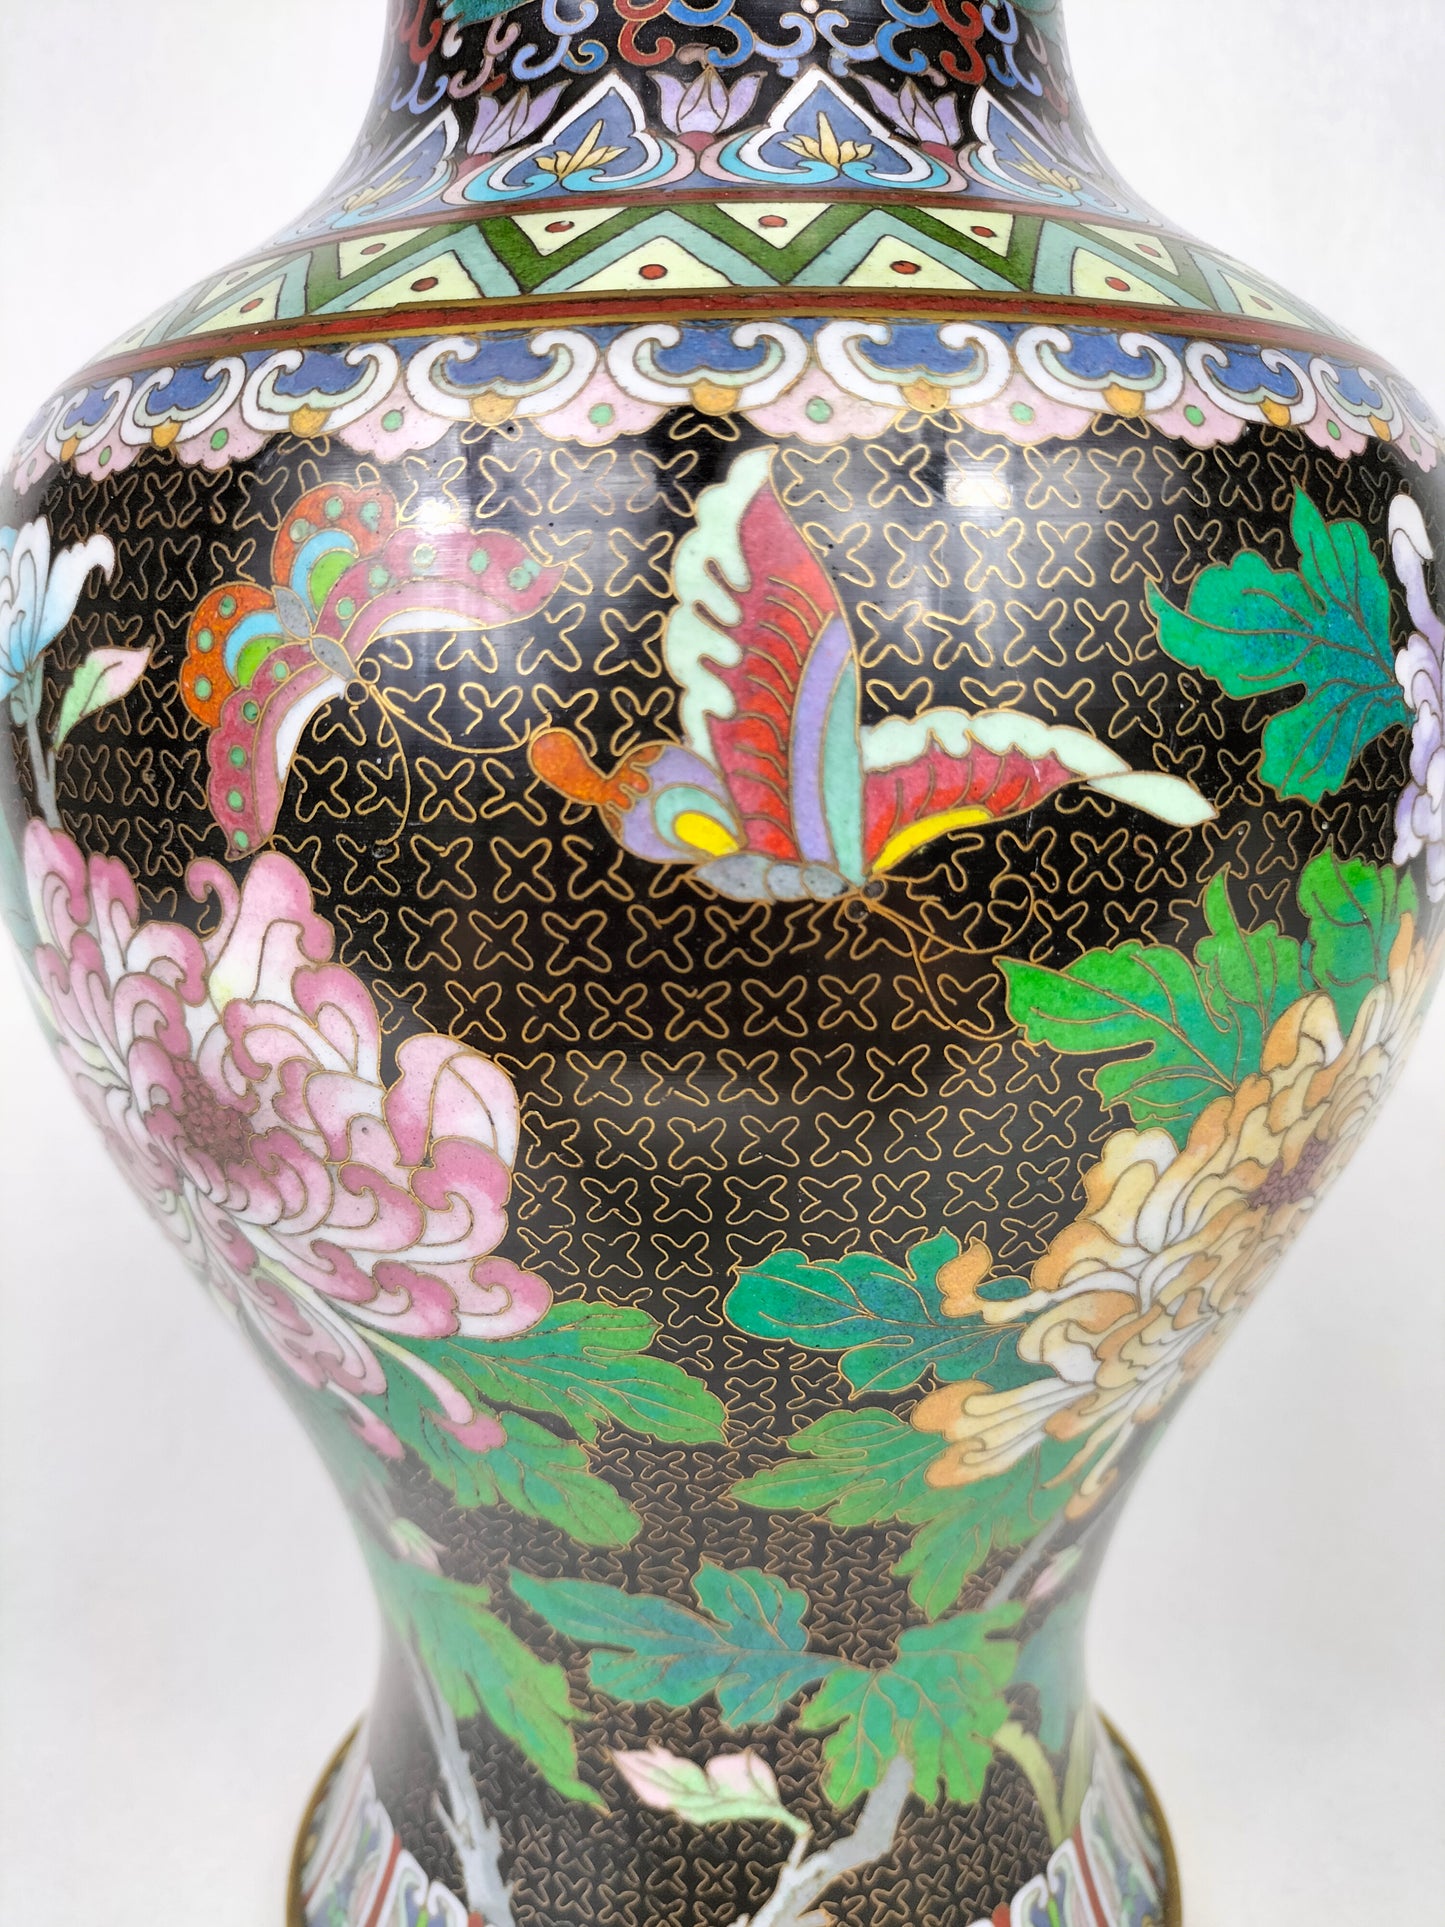 Vaso cloisonne chinês vintage decorado com flores e borboletas // Meados do século XX